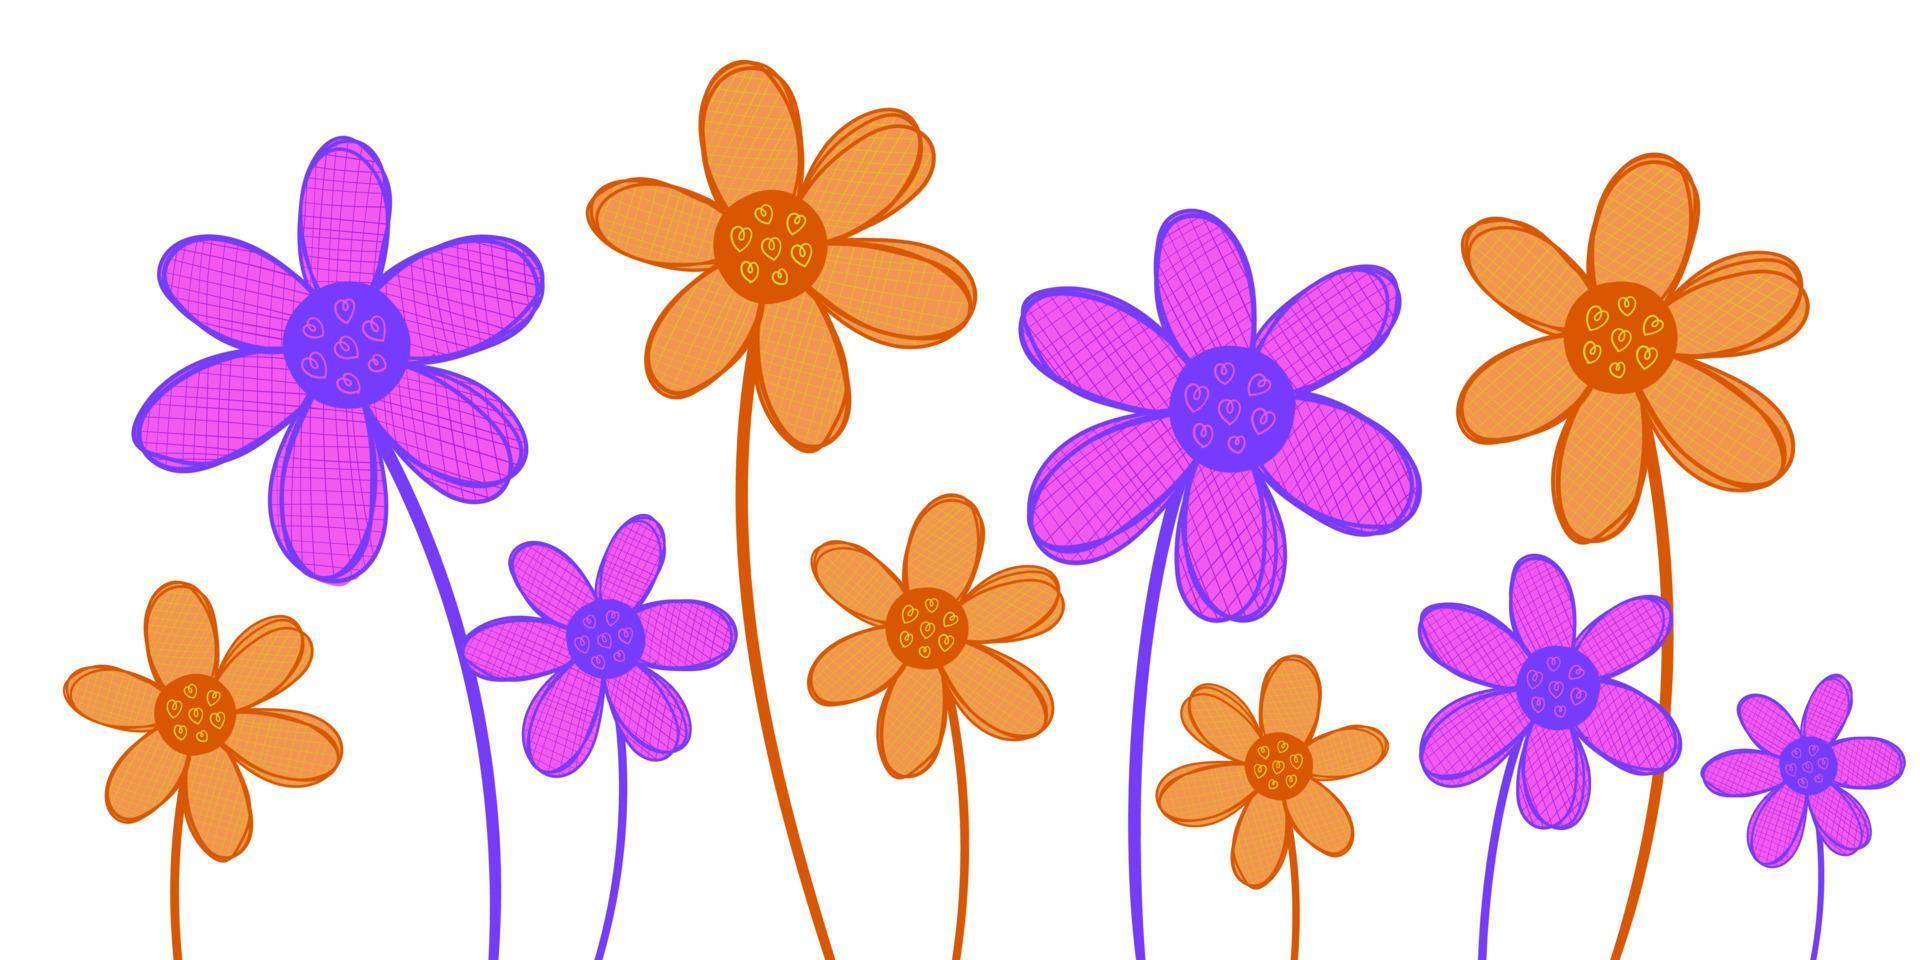 roze knippert schattig bloem. hedendaags kleuren en perfect voor illustraties. vector